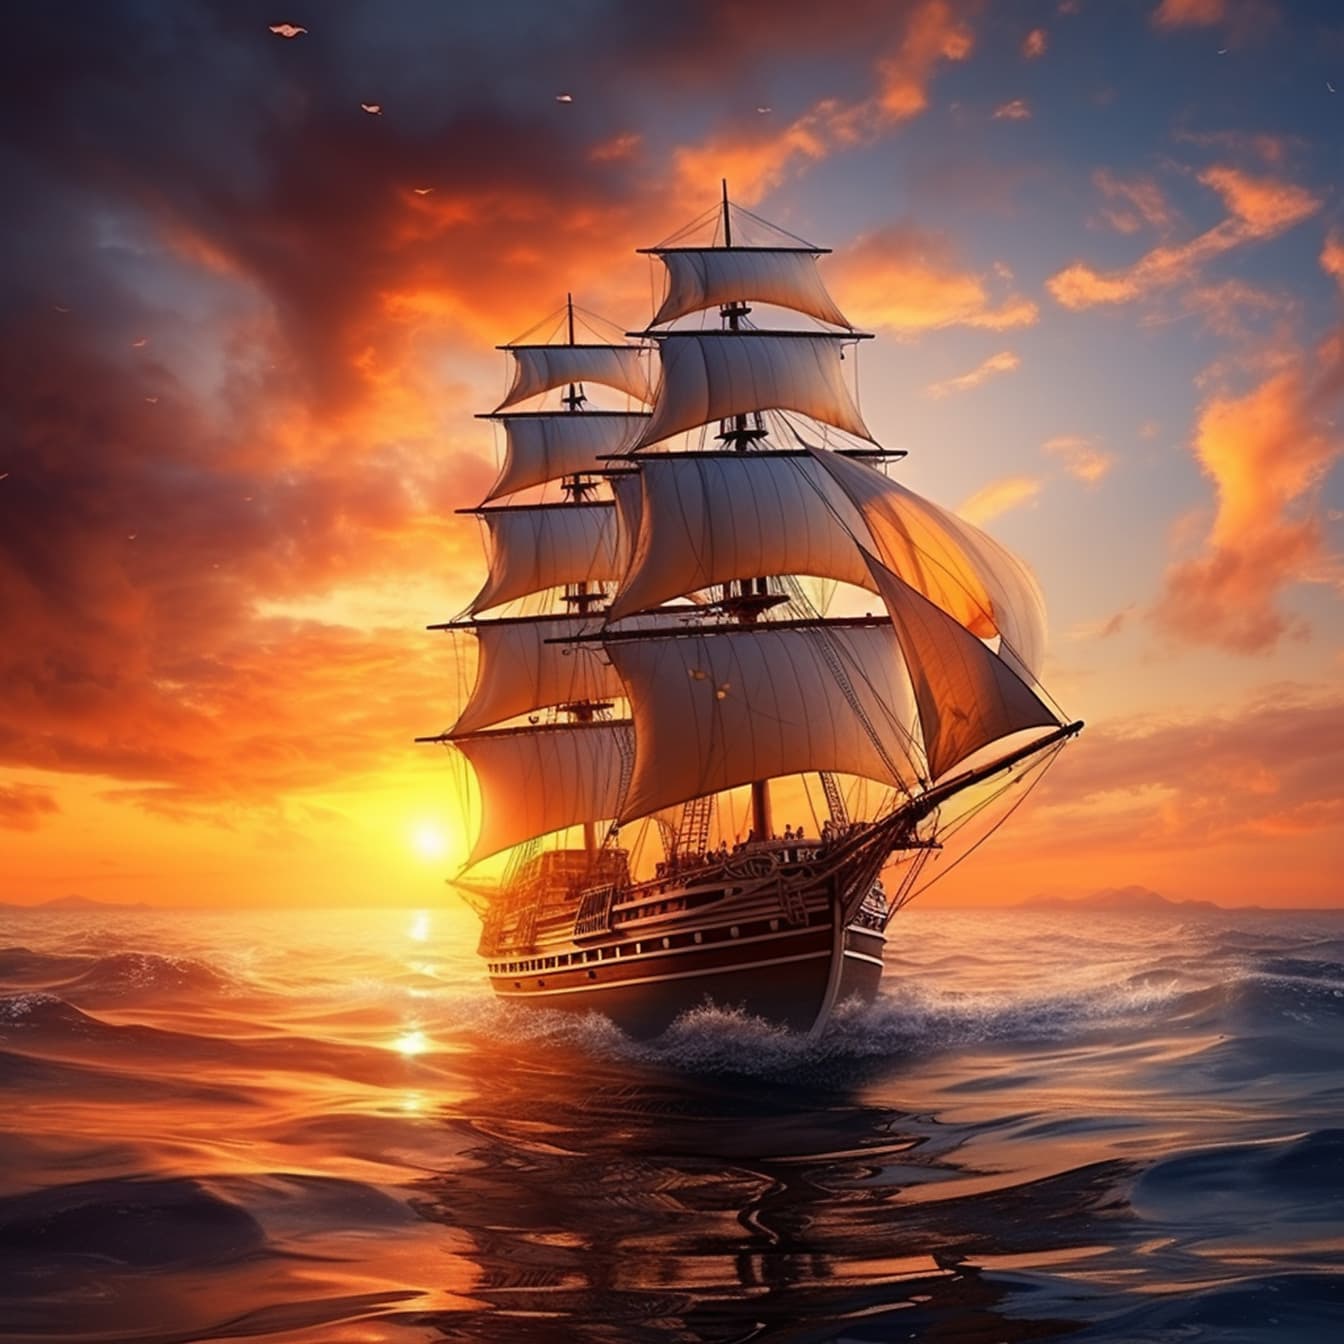 ドラマチックなオレンジイエローの夕日を浴びた海に浮かぶ雄大な帆船